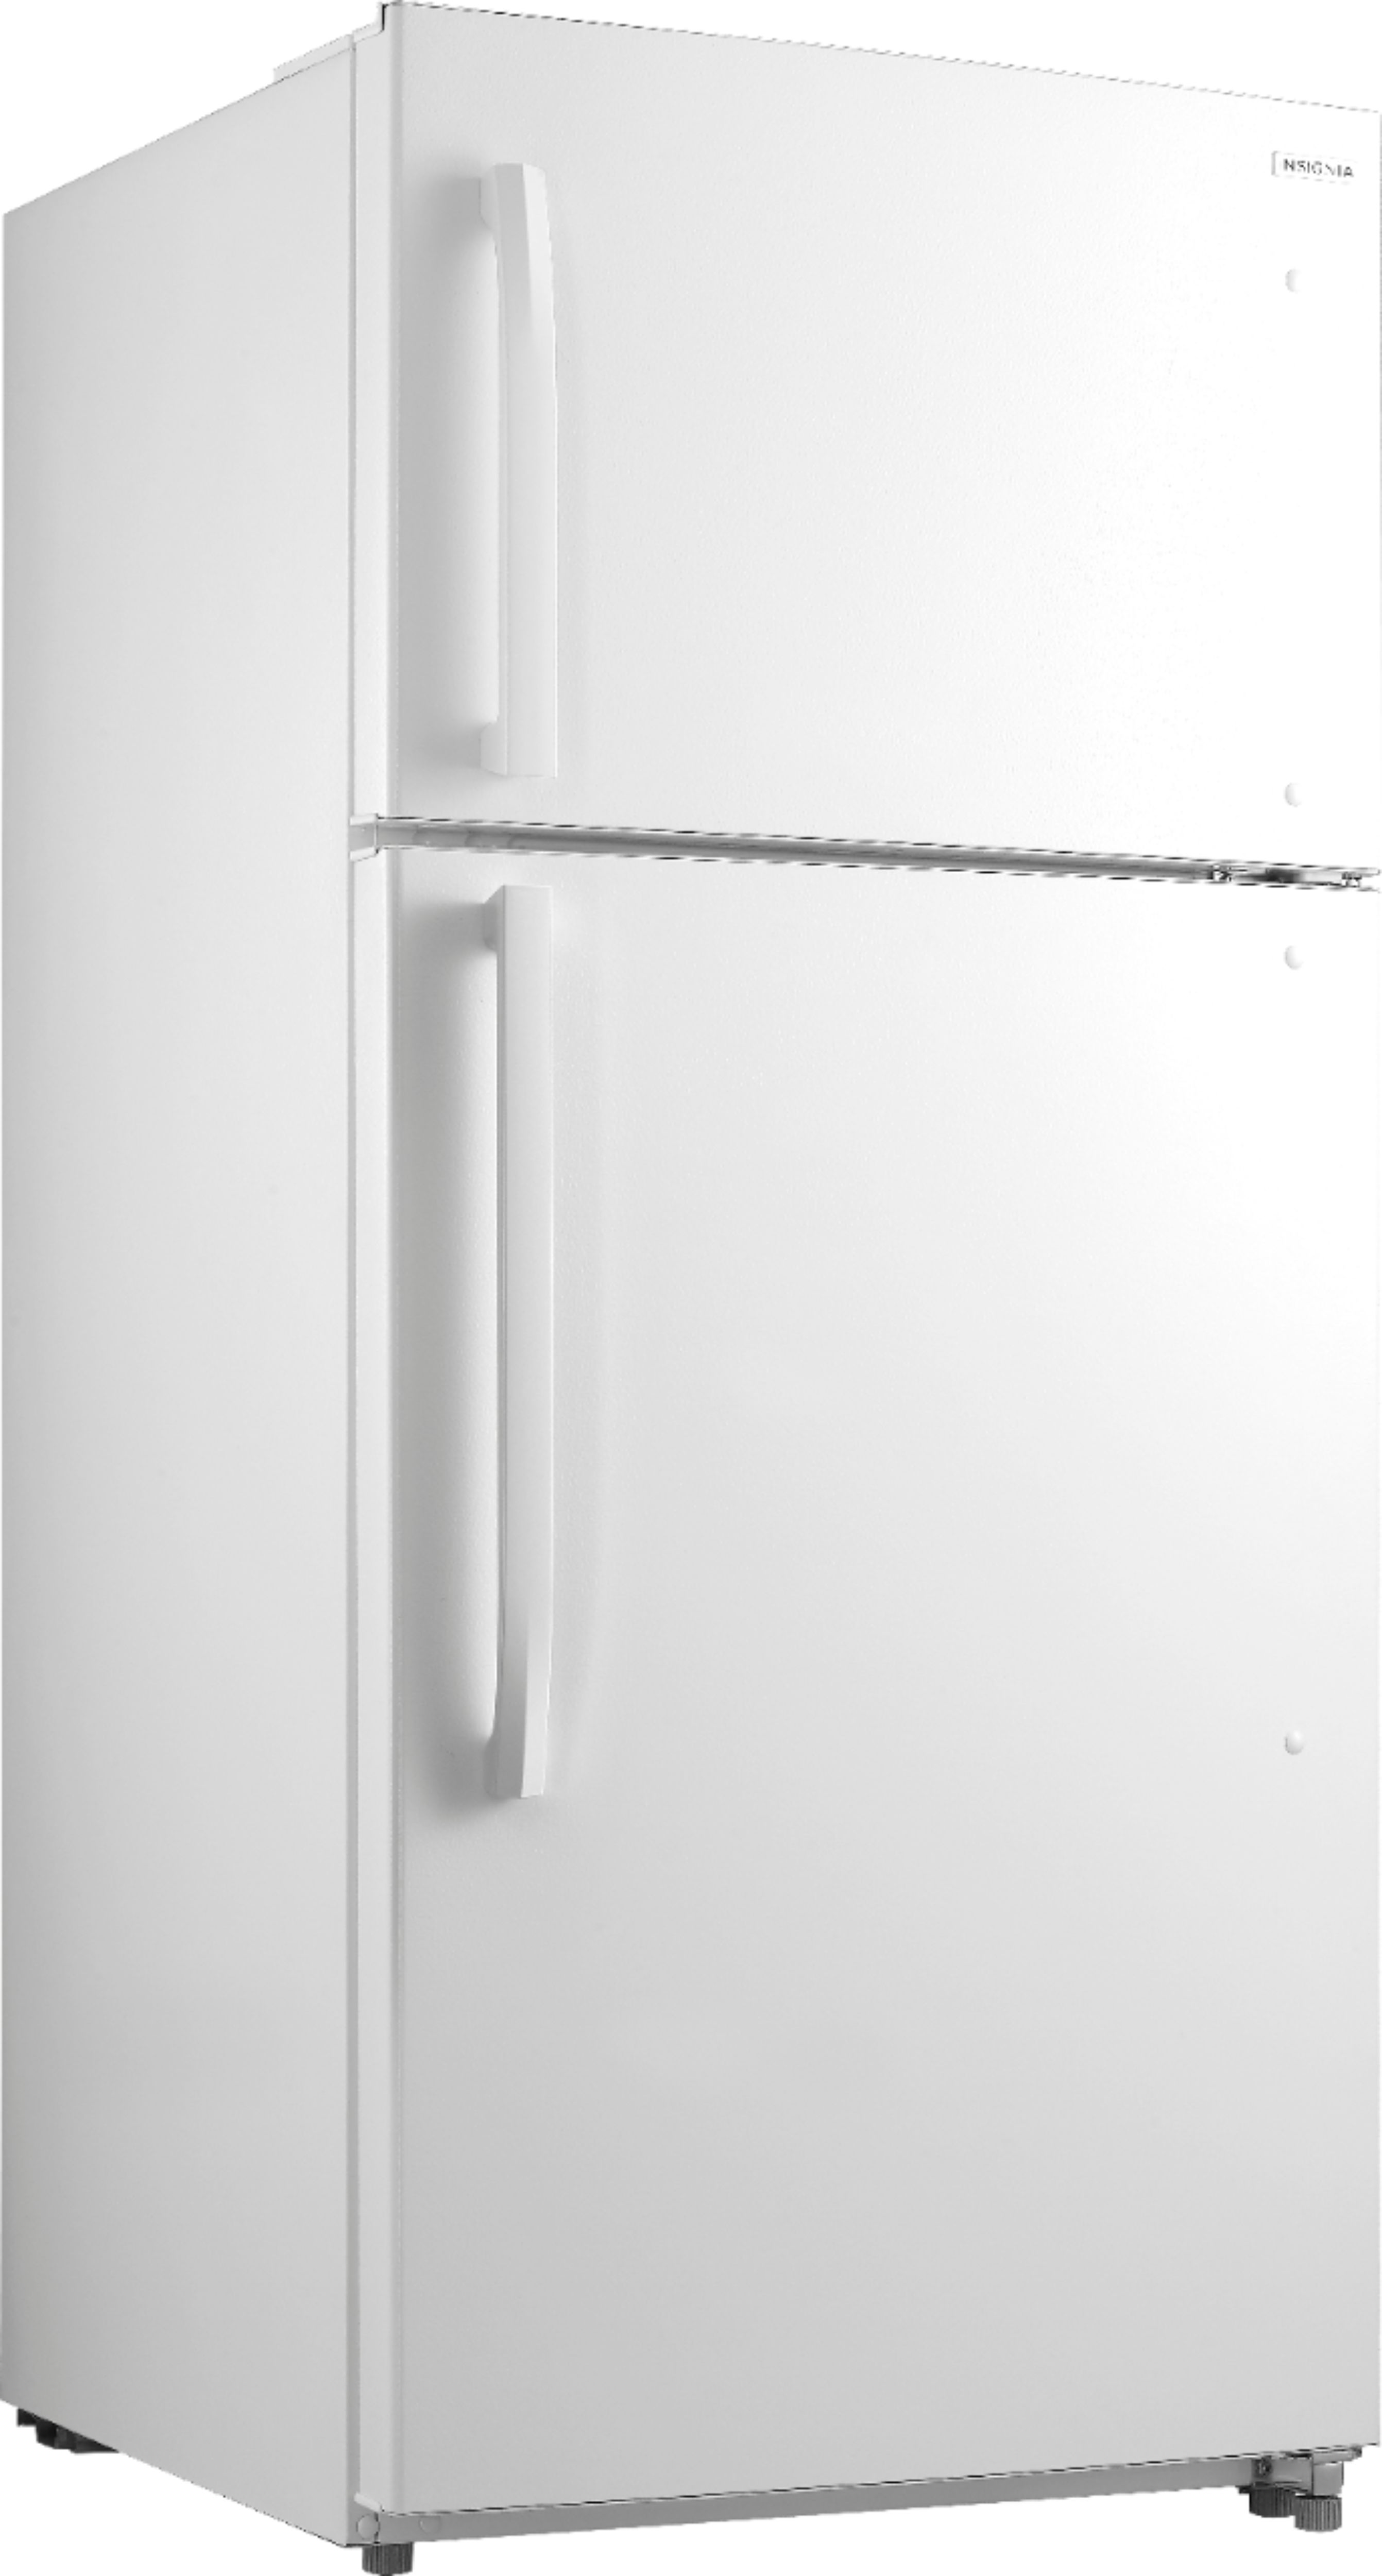 Angle View: Insignia™ - 18.1 Cu. Ft. Top-Freezer Refrigerator - White